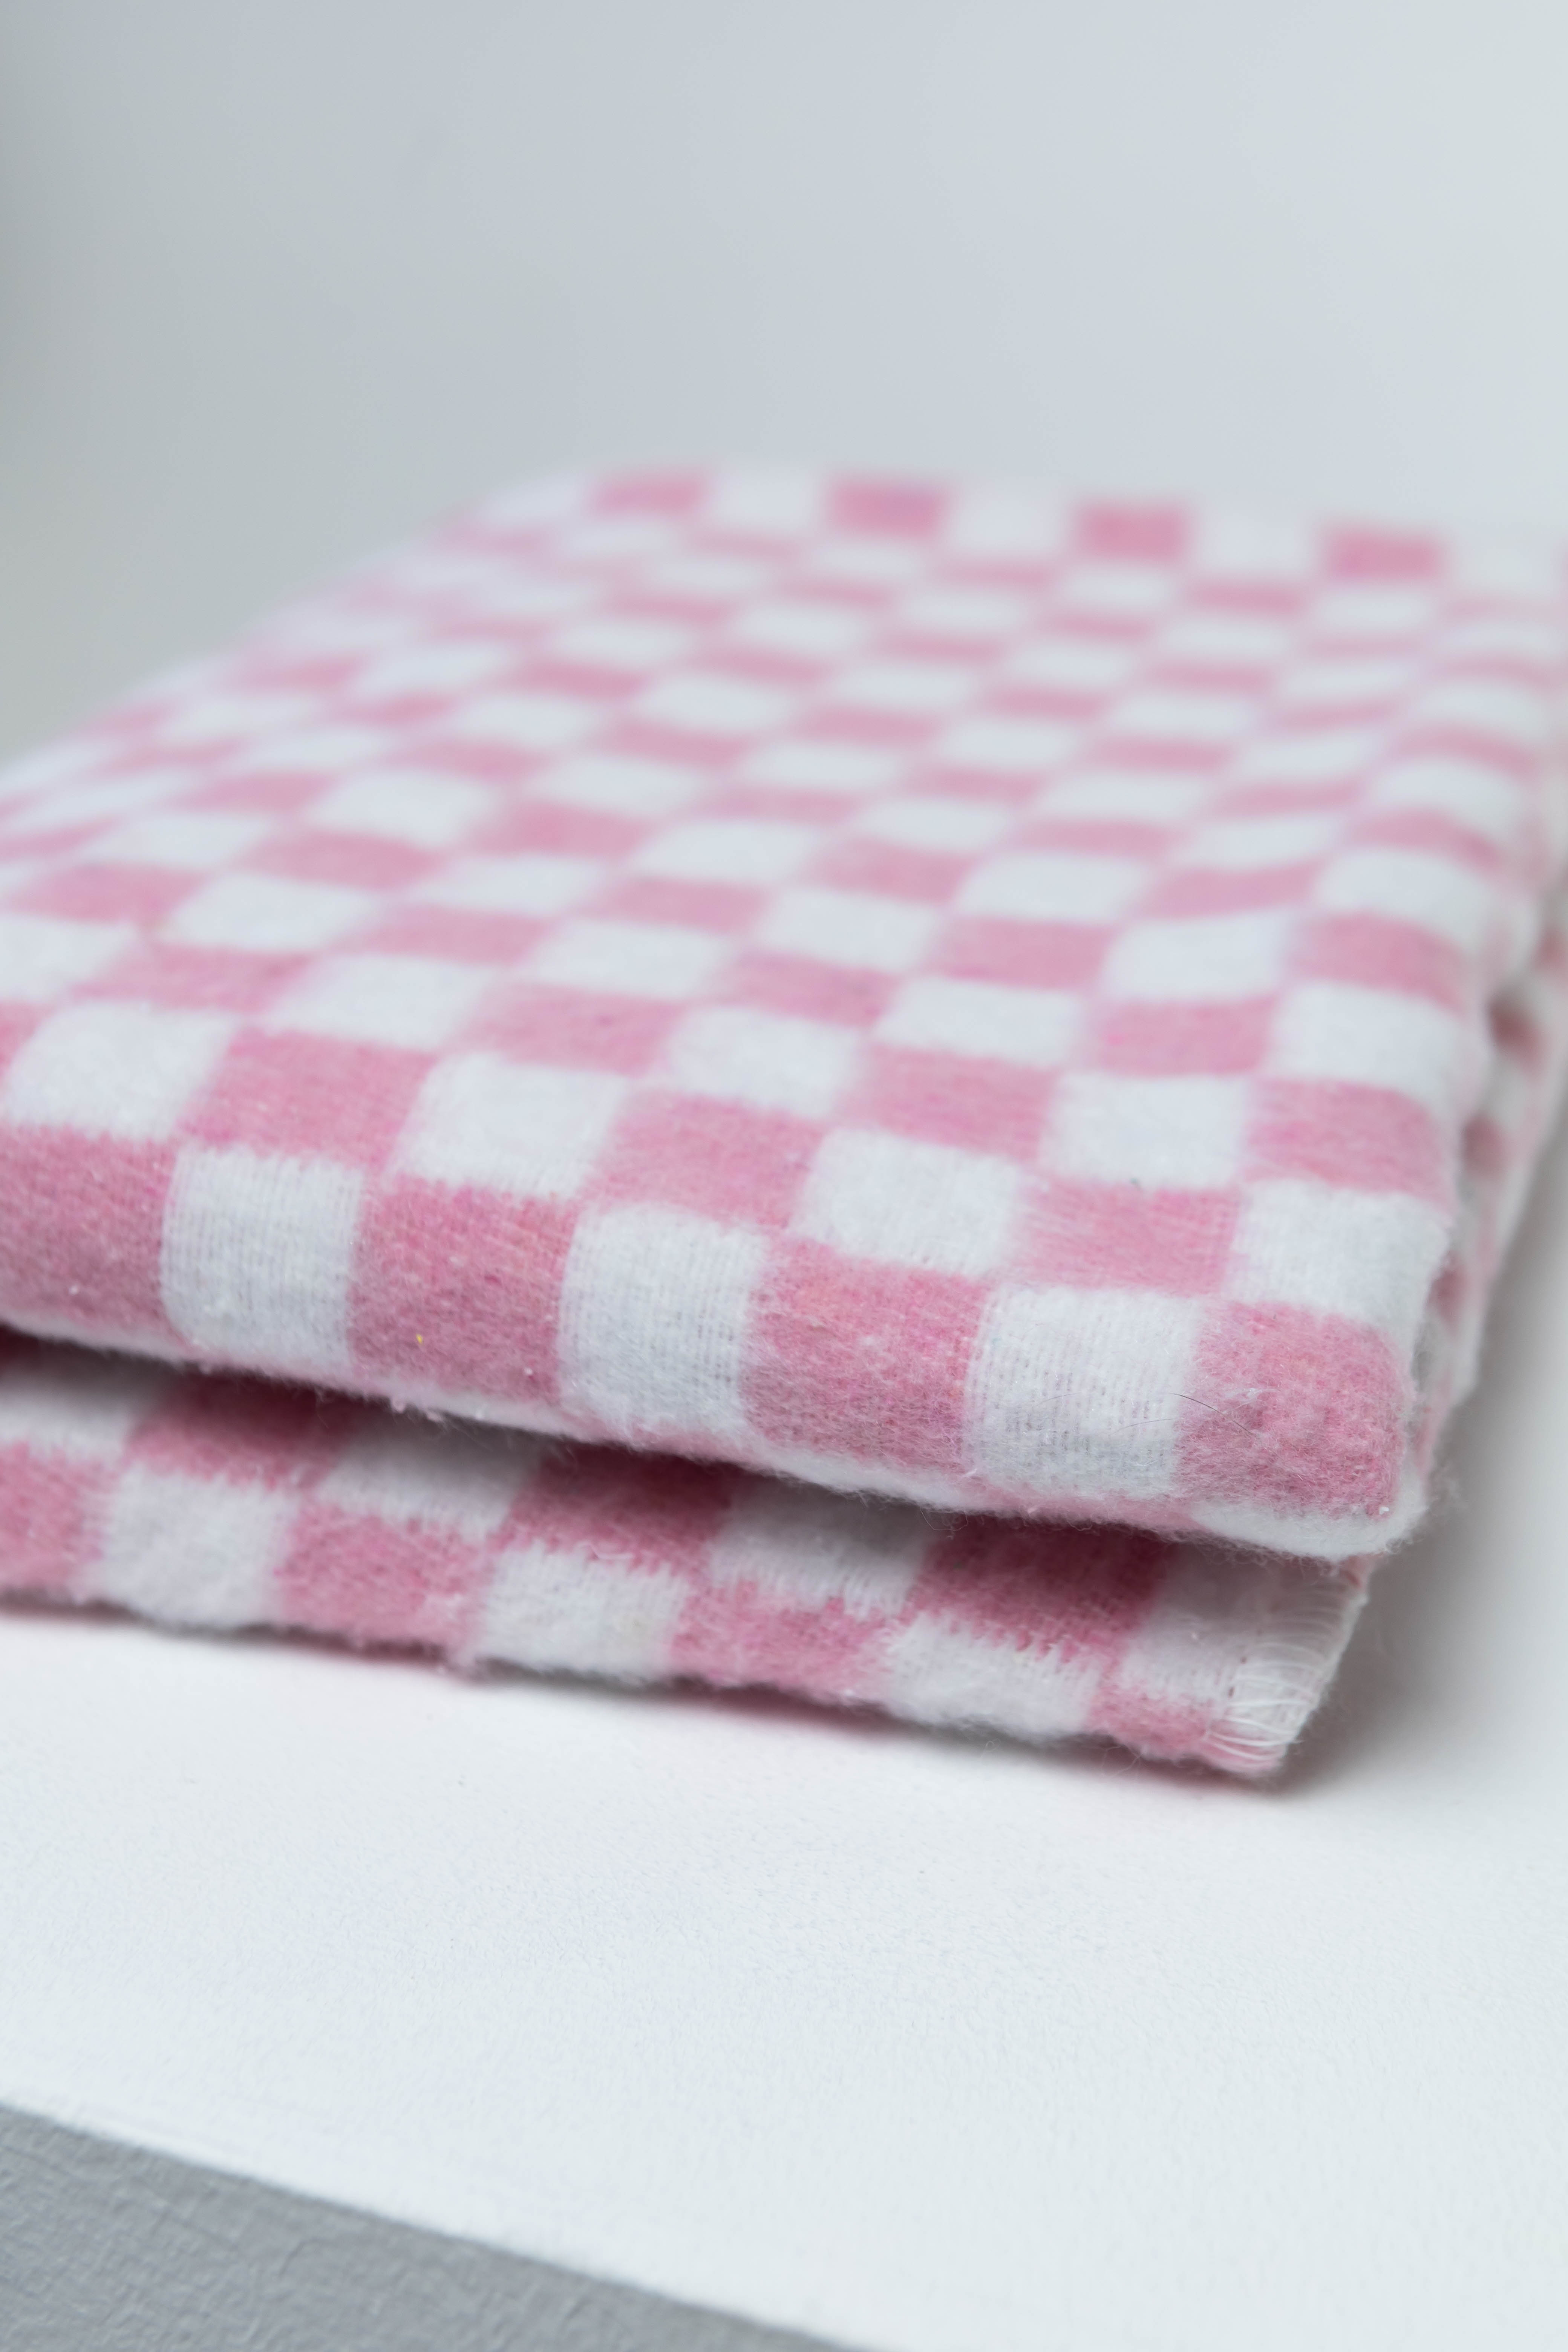 Одеяло байковое детское Суконная фабрика г. Шуя 100х140 рисунок клетка розовый - фото 7